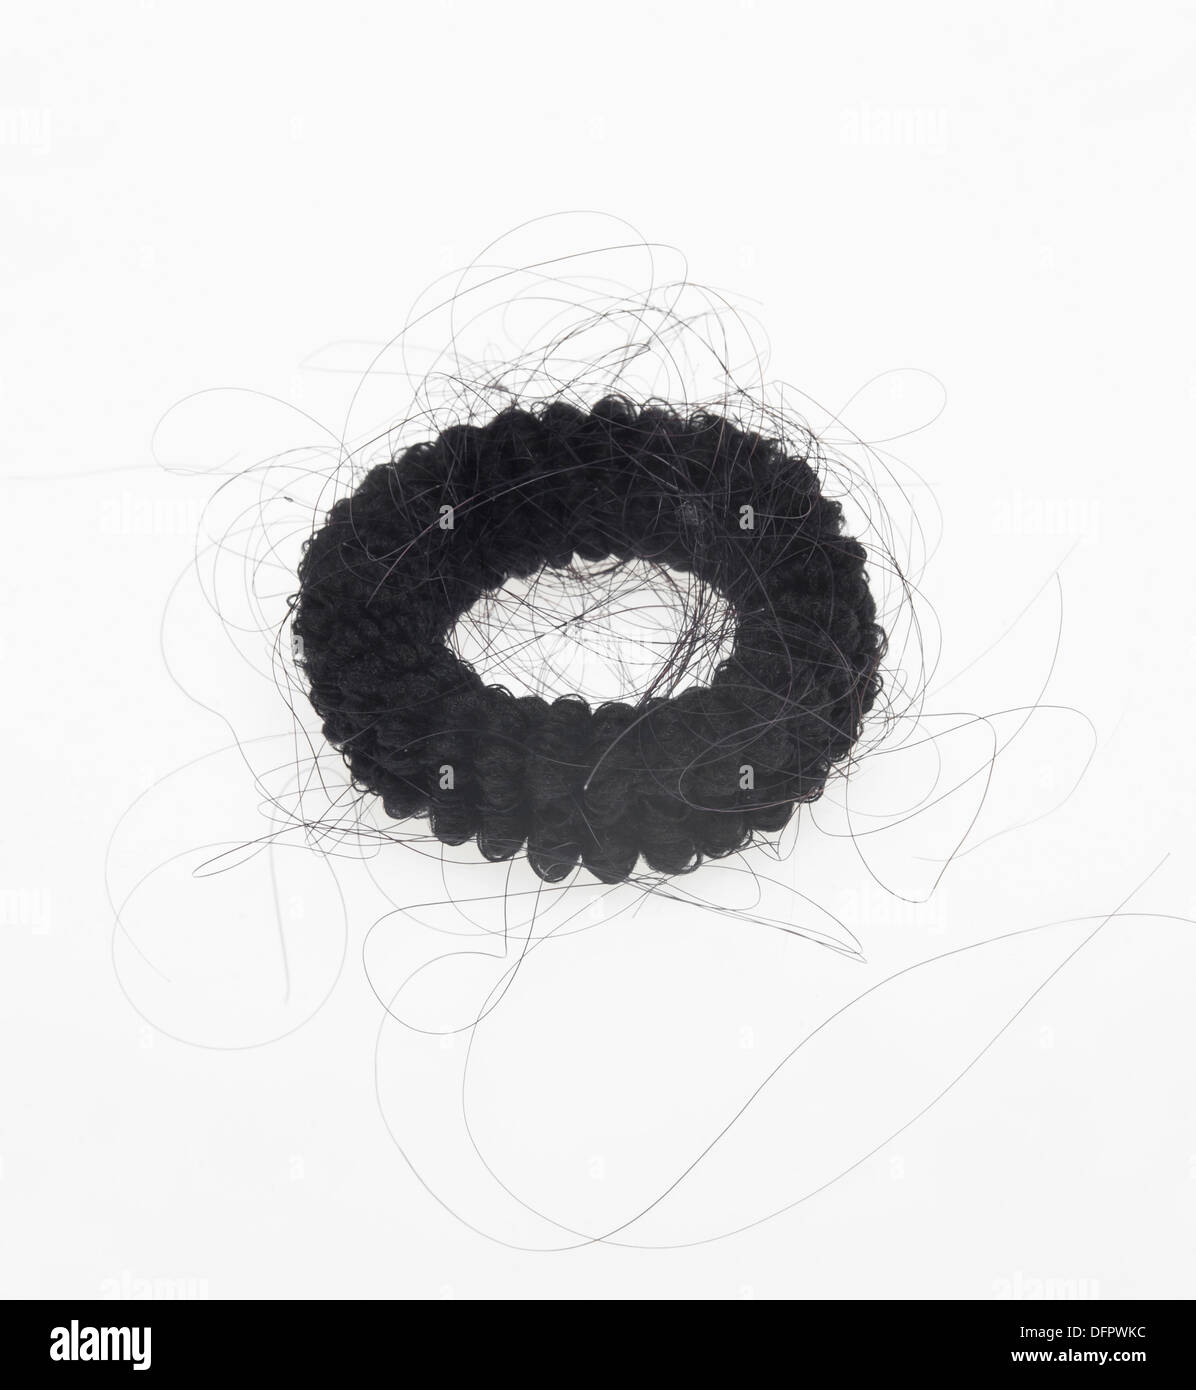 The elastic headband with hair loss Stock Photo